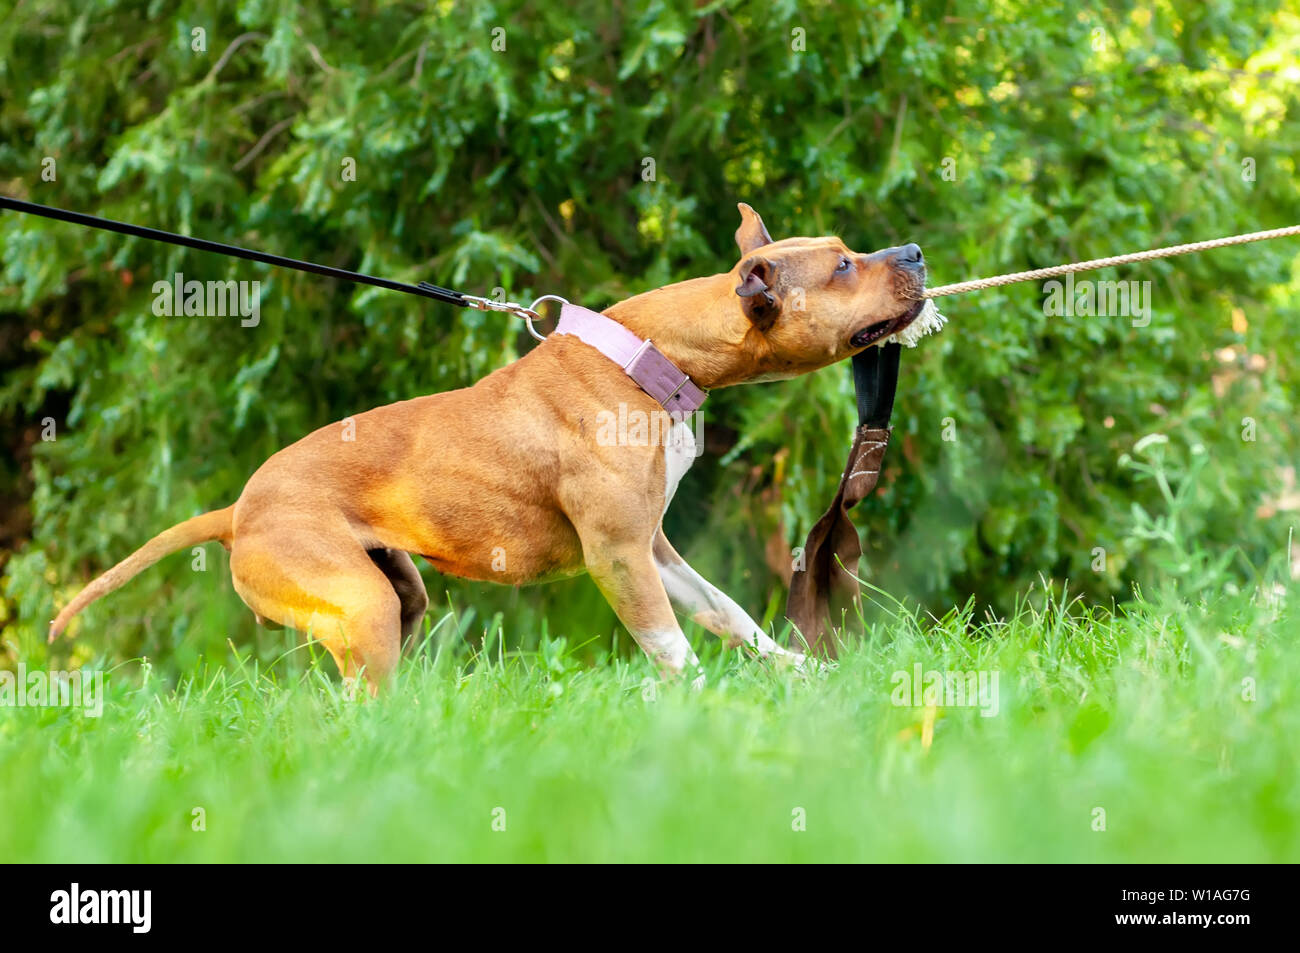 Blick auf die Ausbildung eines American Staffordshire Terrier Hund während Sie ein Seil an einem sonnigen Tag in einer grünen Umgebung. Stockfoto